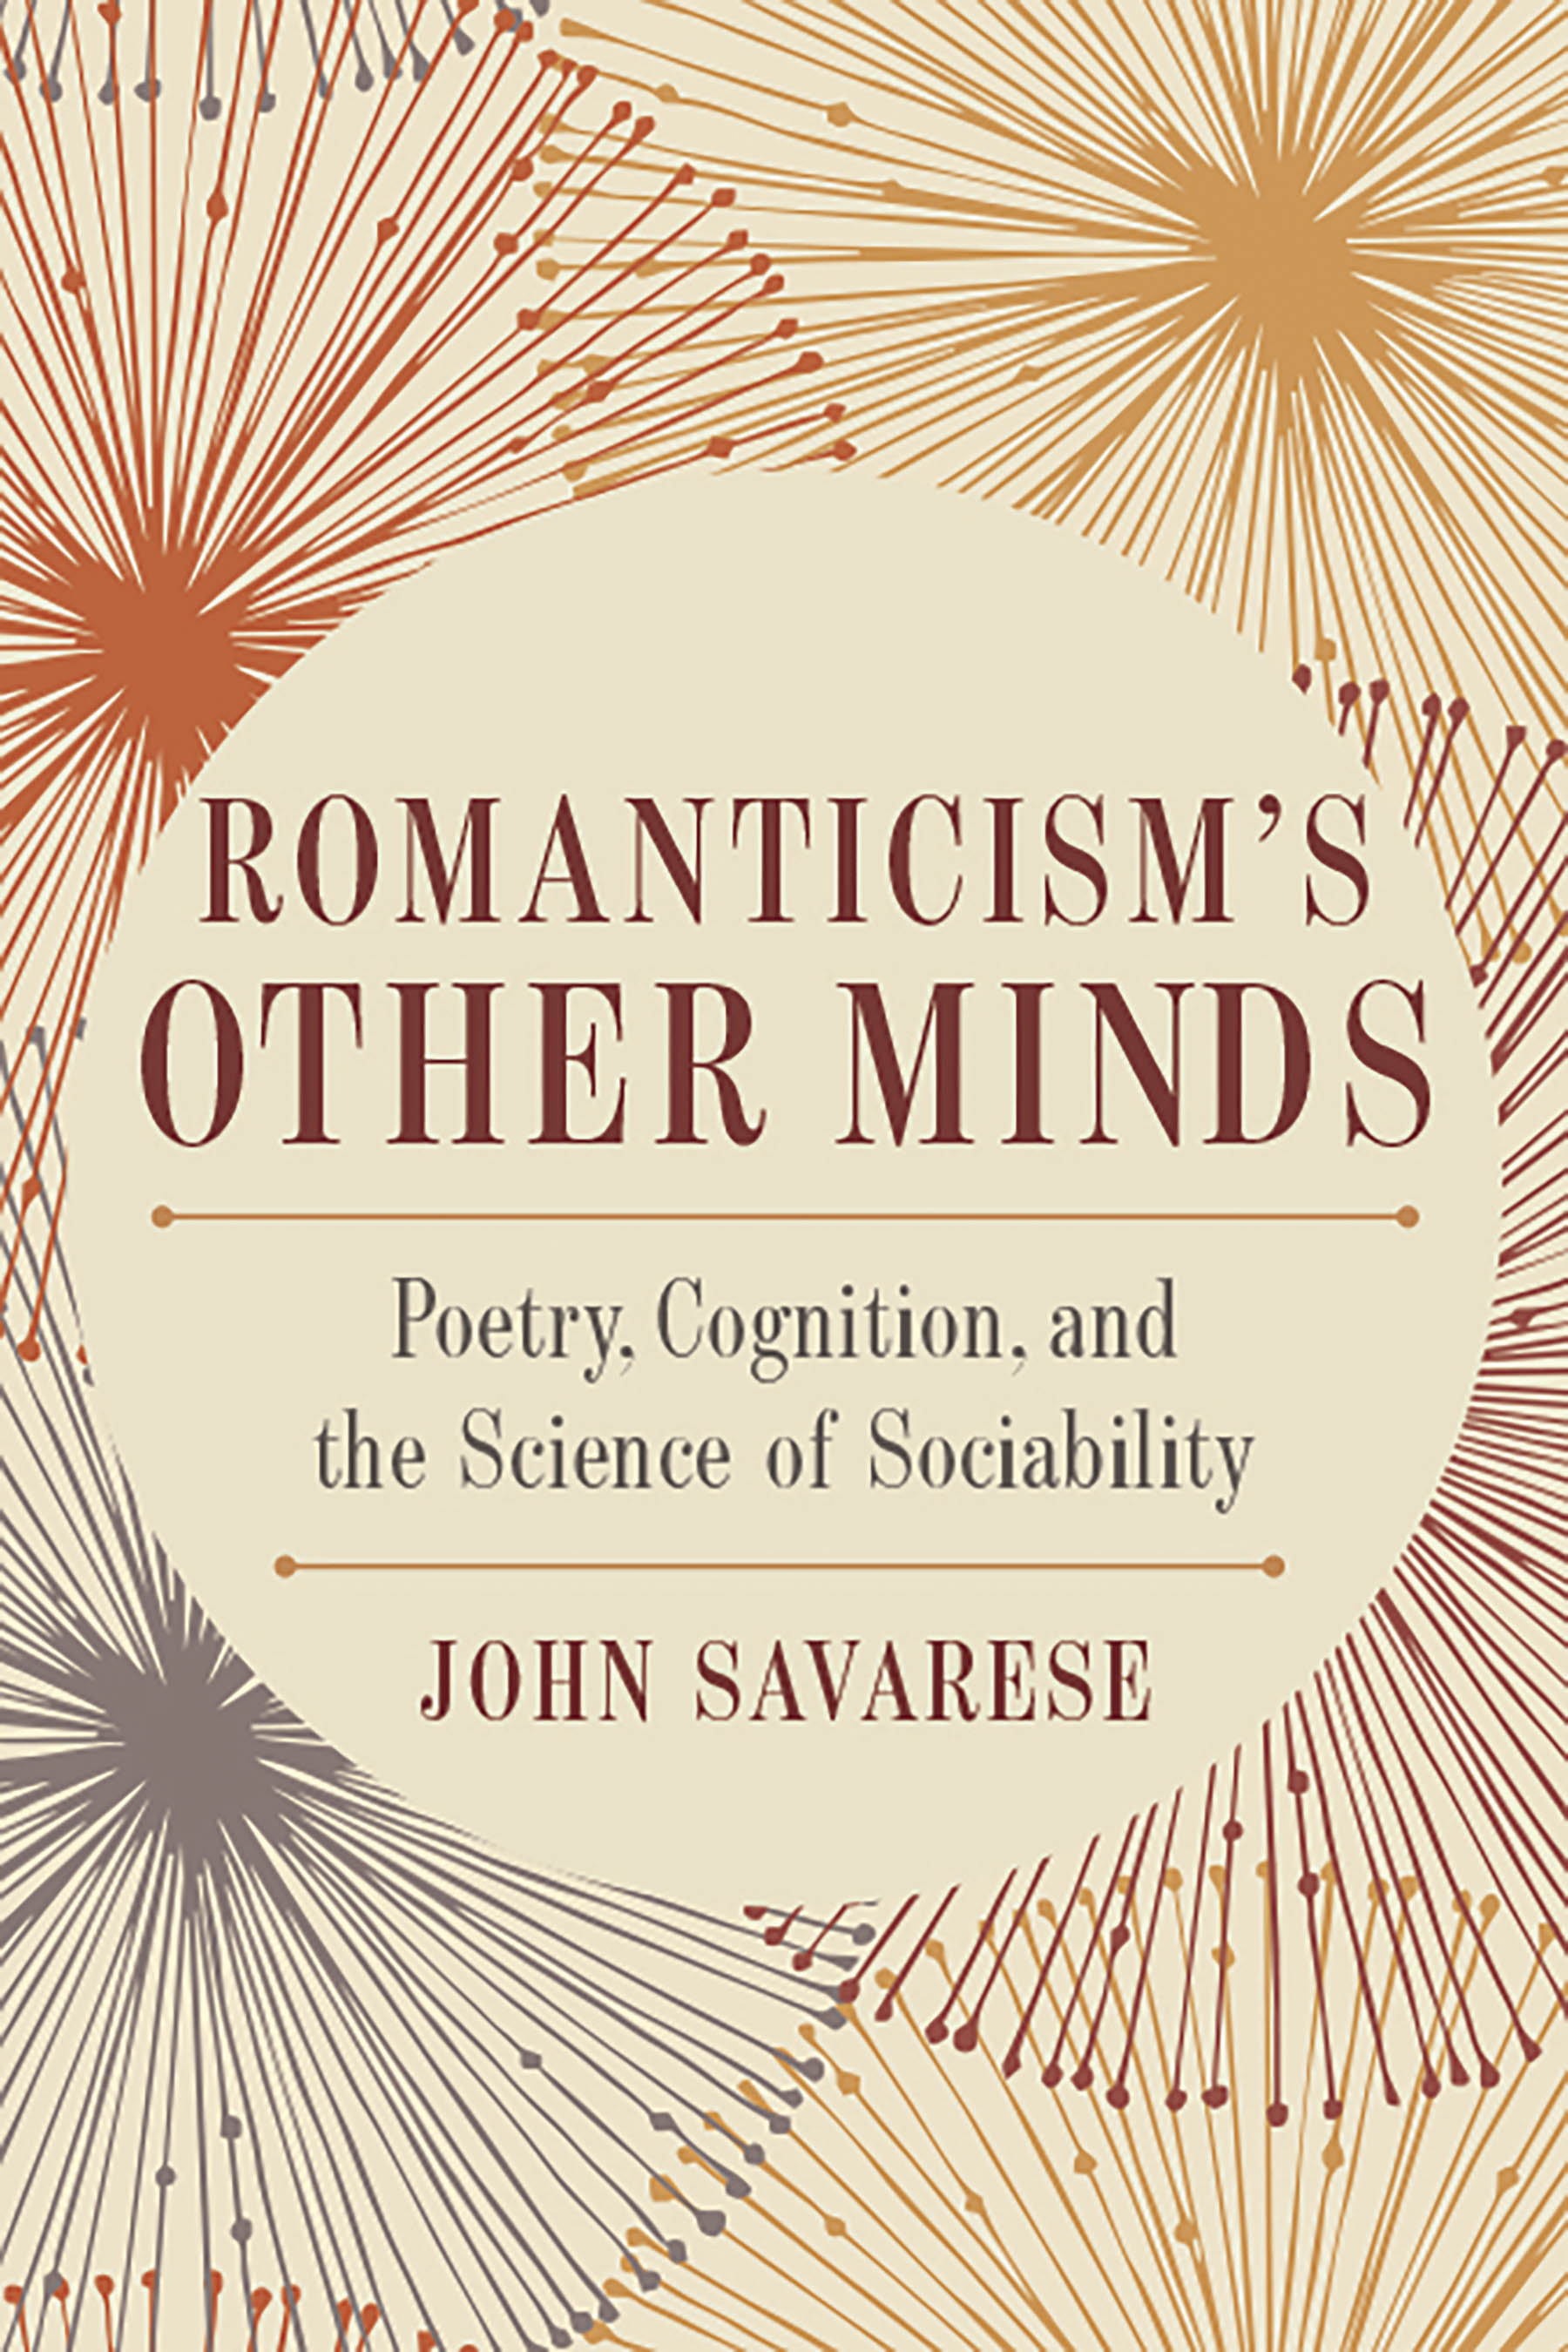 Romanticism's Other Minds